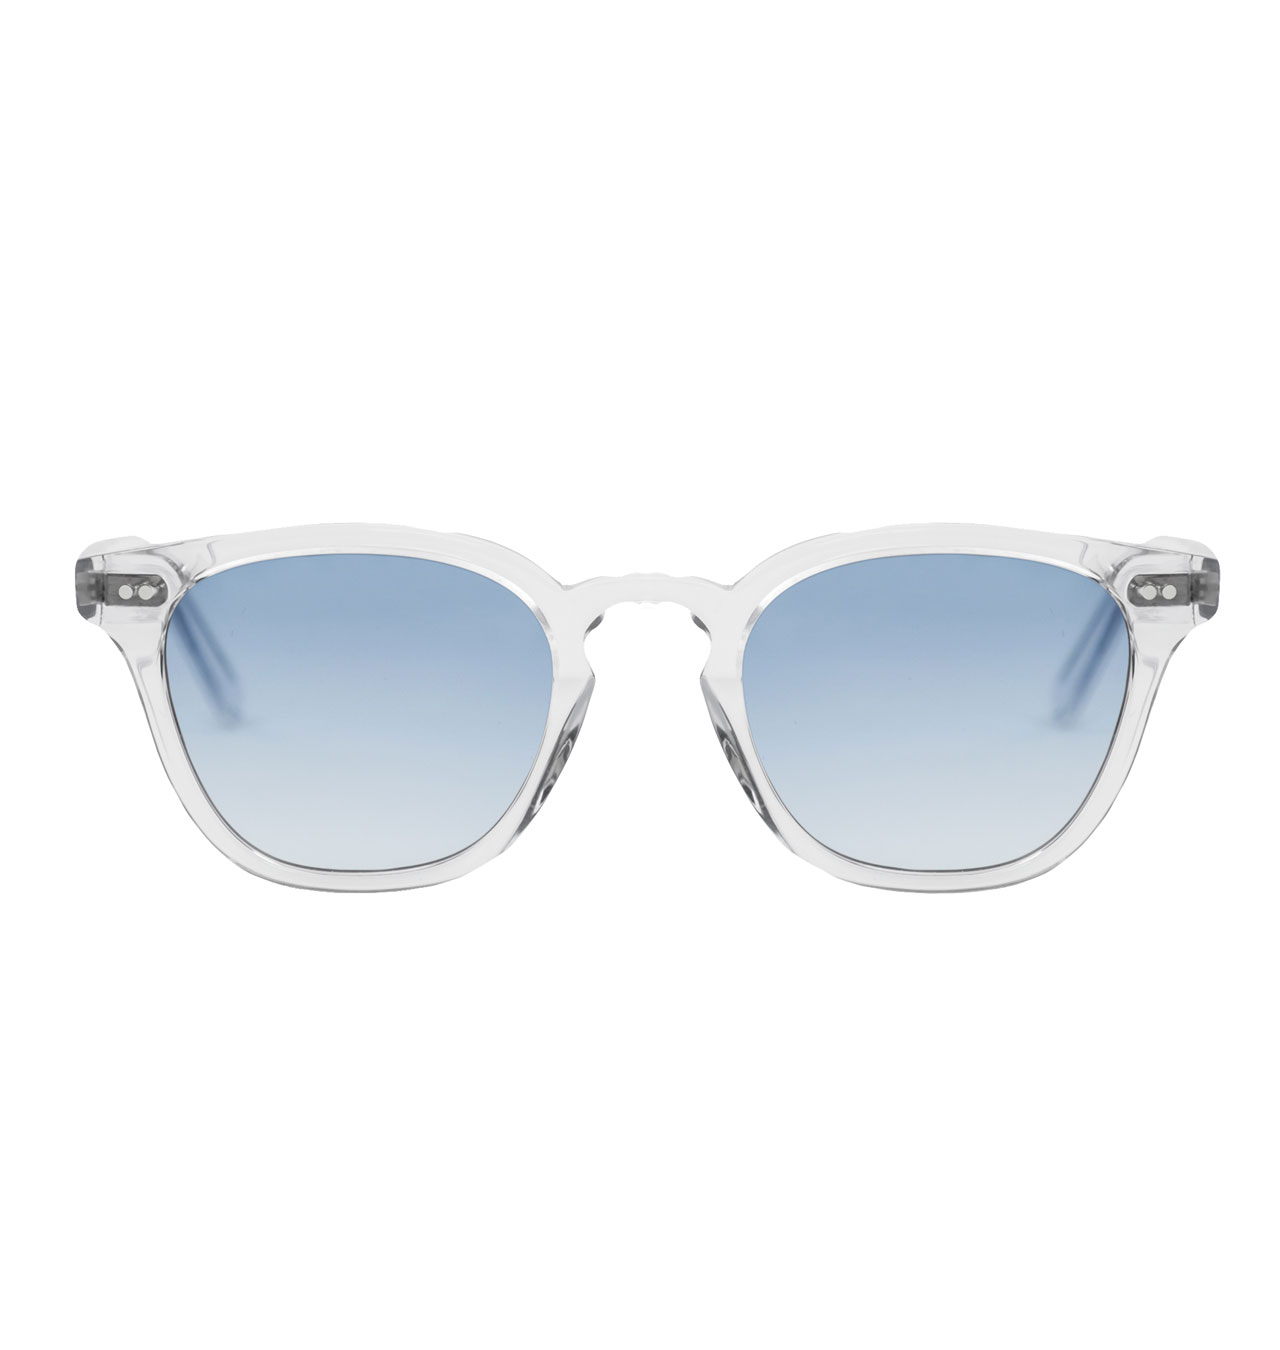 Monokel-Eyewear---River-Crystal-Sunglasses---Gradient-Blue-Lens-1